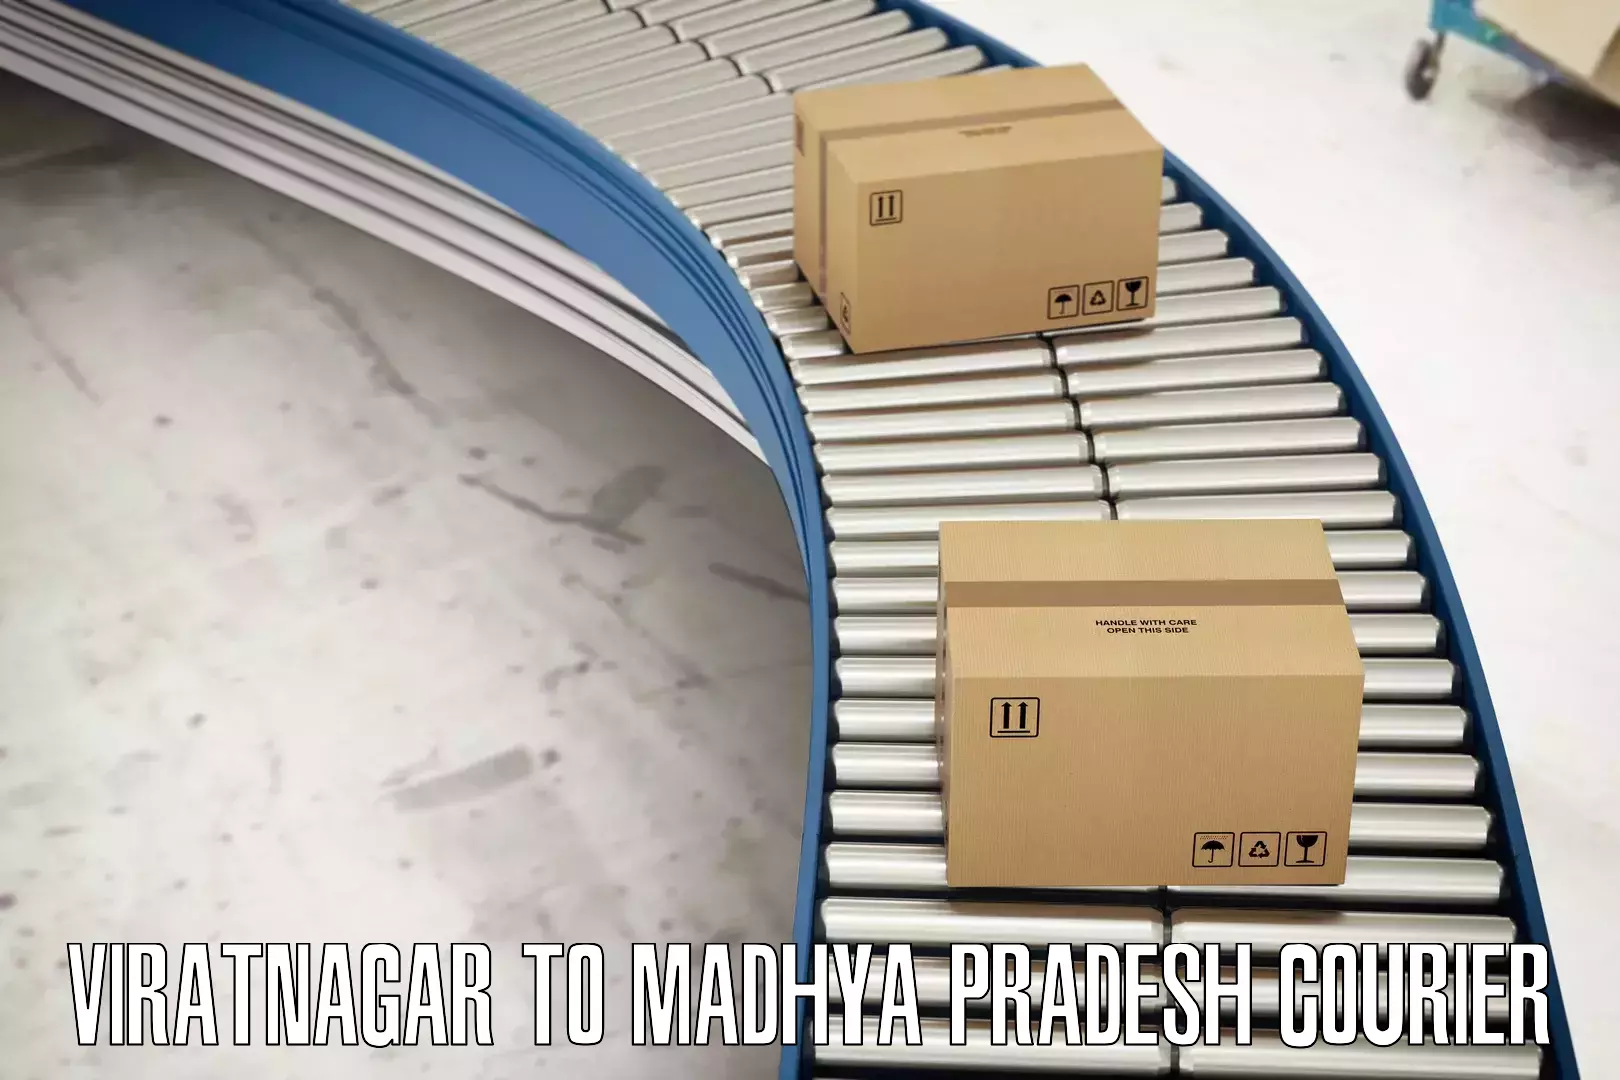 Cost-effective courier solutions Viratnagar to Banda Sagar